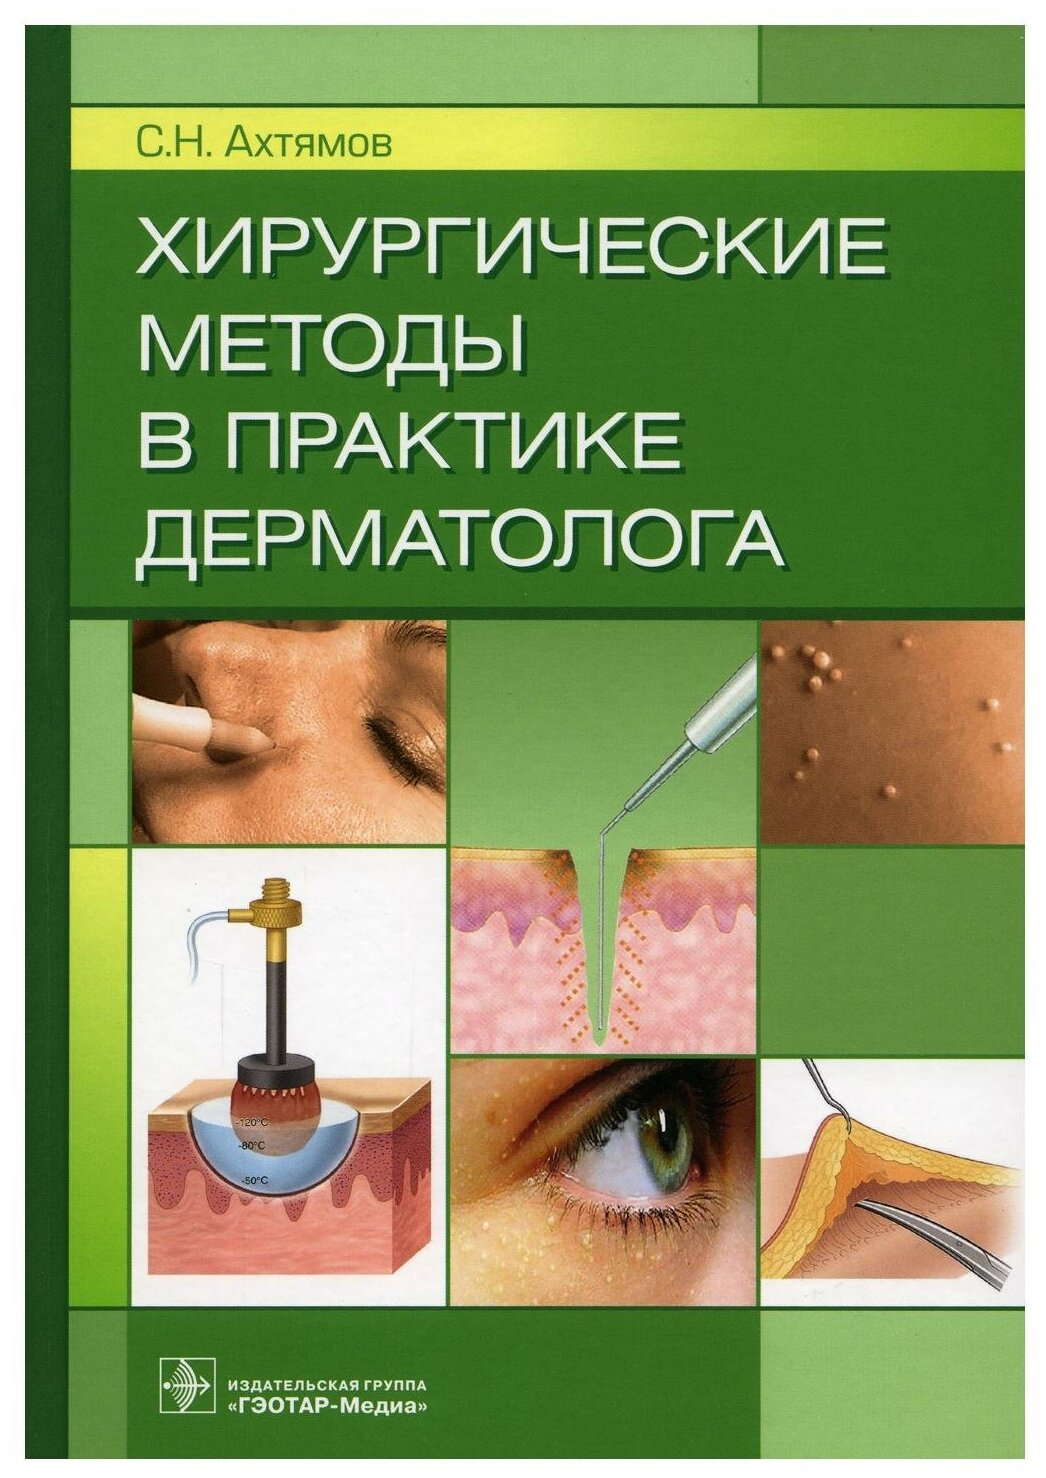 Хирургические методы в практике дерматолога - фото №1